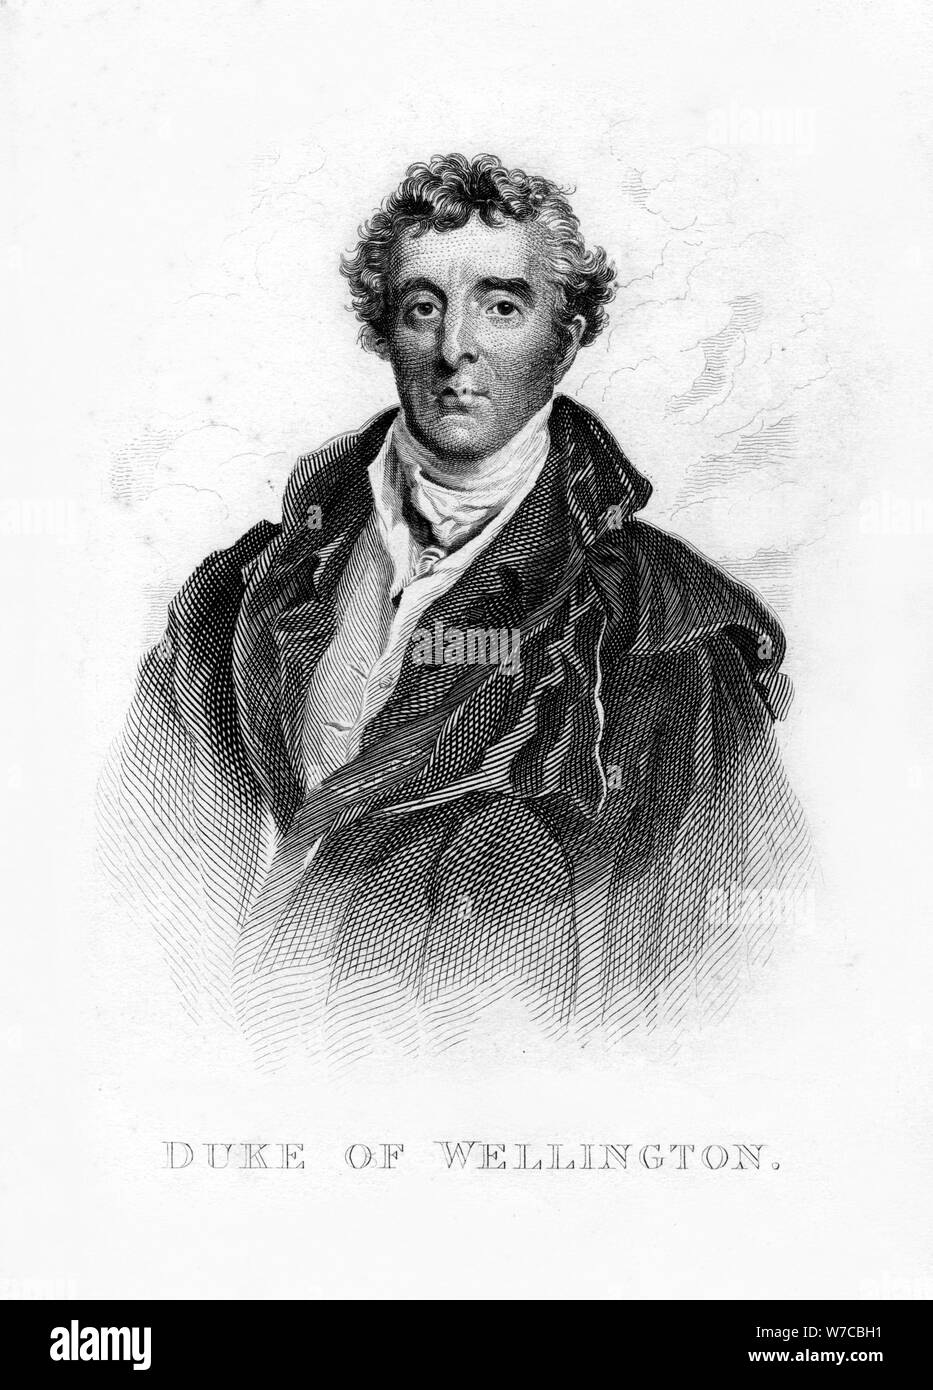 Arthur Wellesley, 1er duc de Wellington, soldat britannique et homme d'État, 19ème siècle. Artiste : Inconnu Banque D'Images